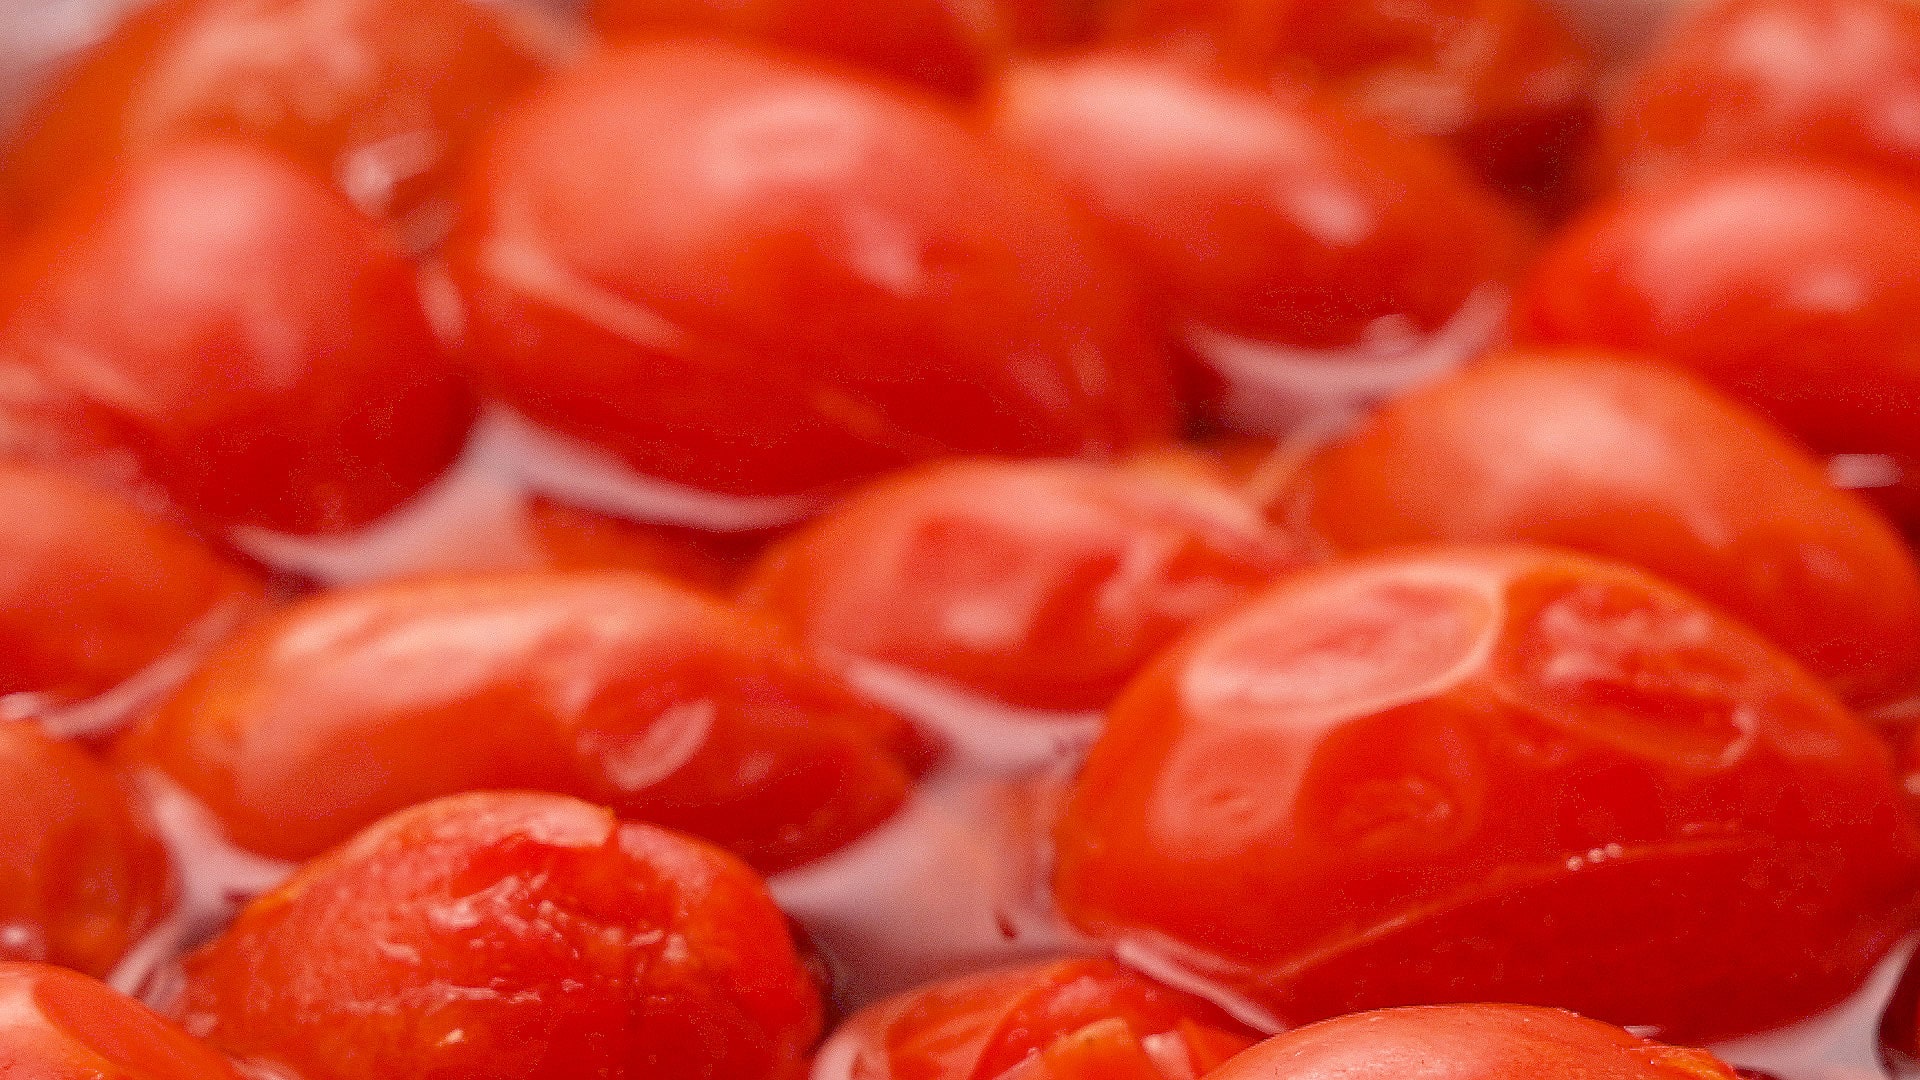 Loosening the tomato skin.